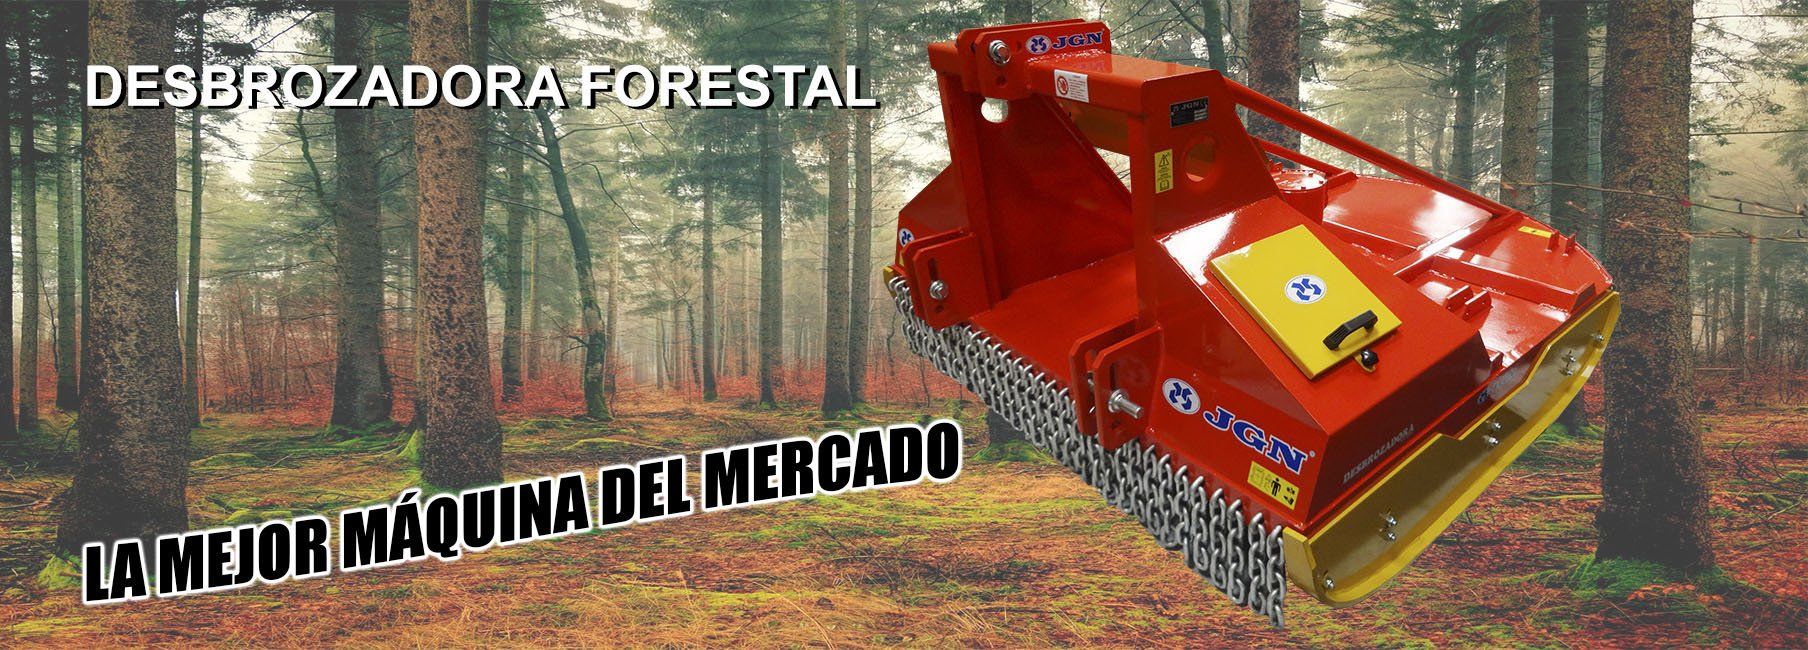 Desbrozadora Forestal TRACTOR AGÍCOLA